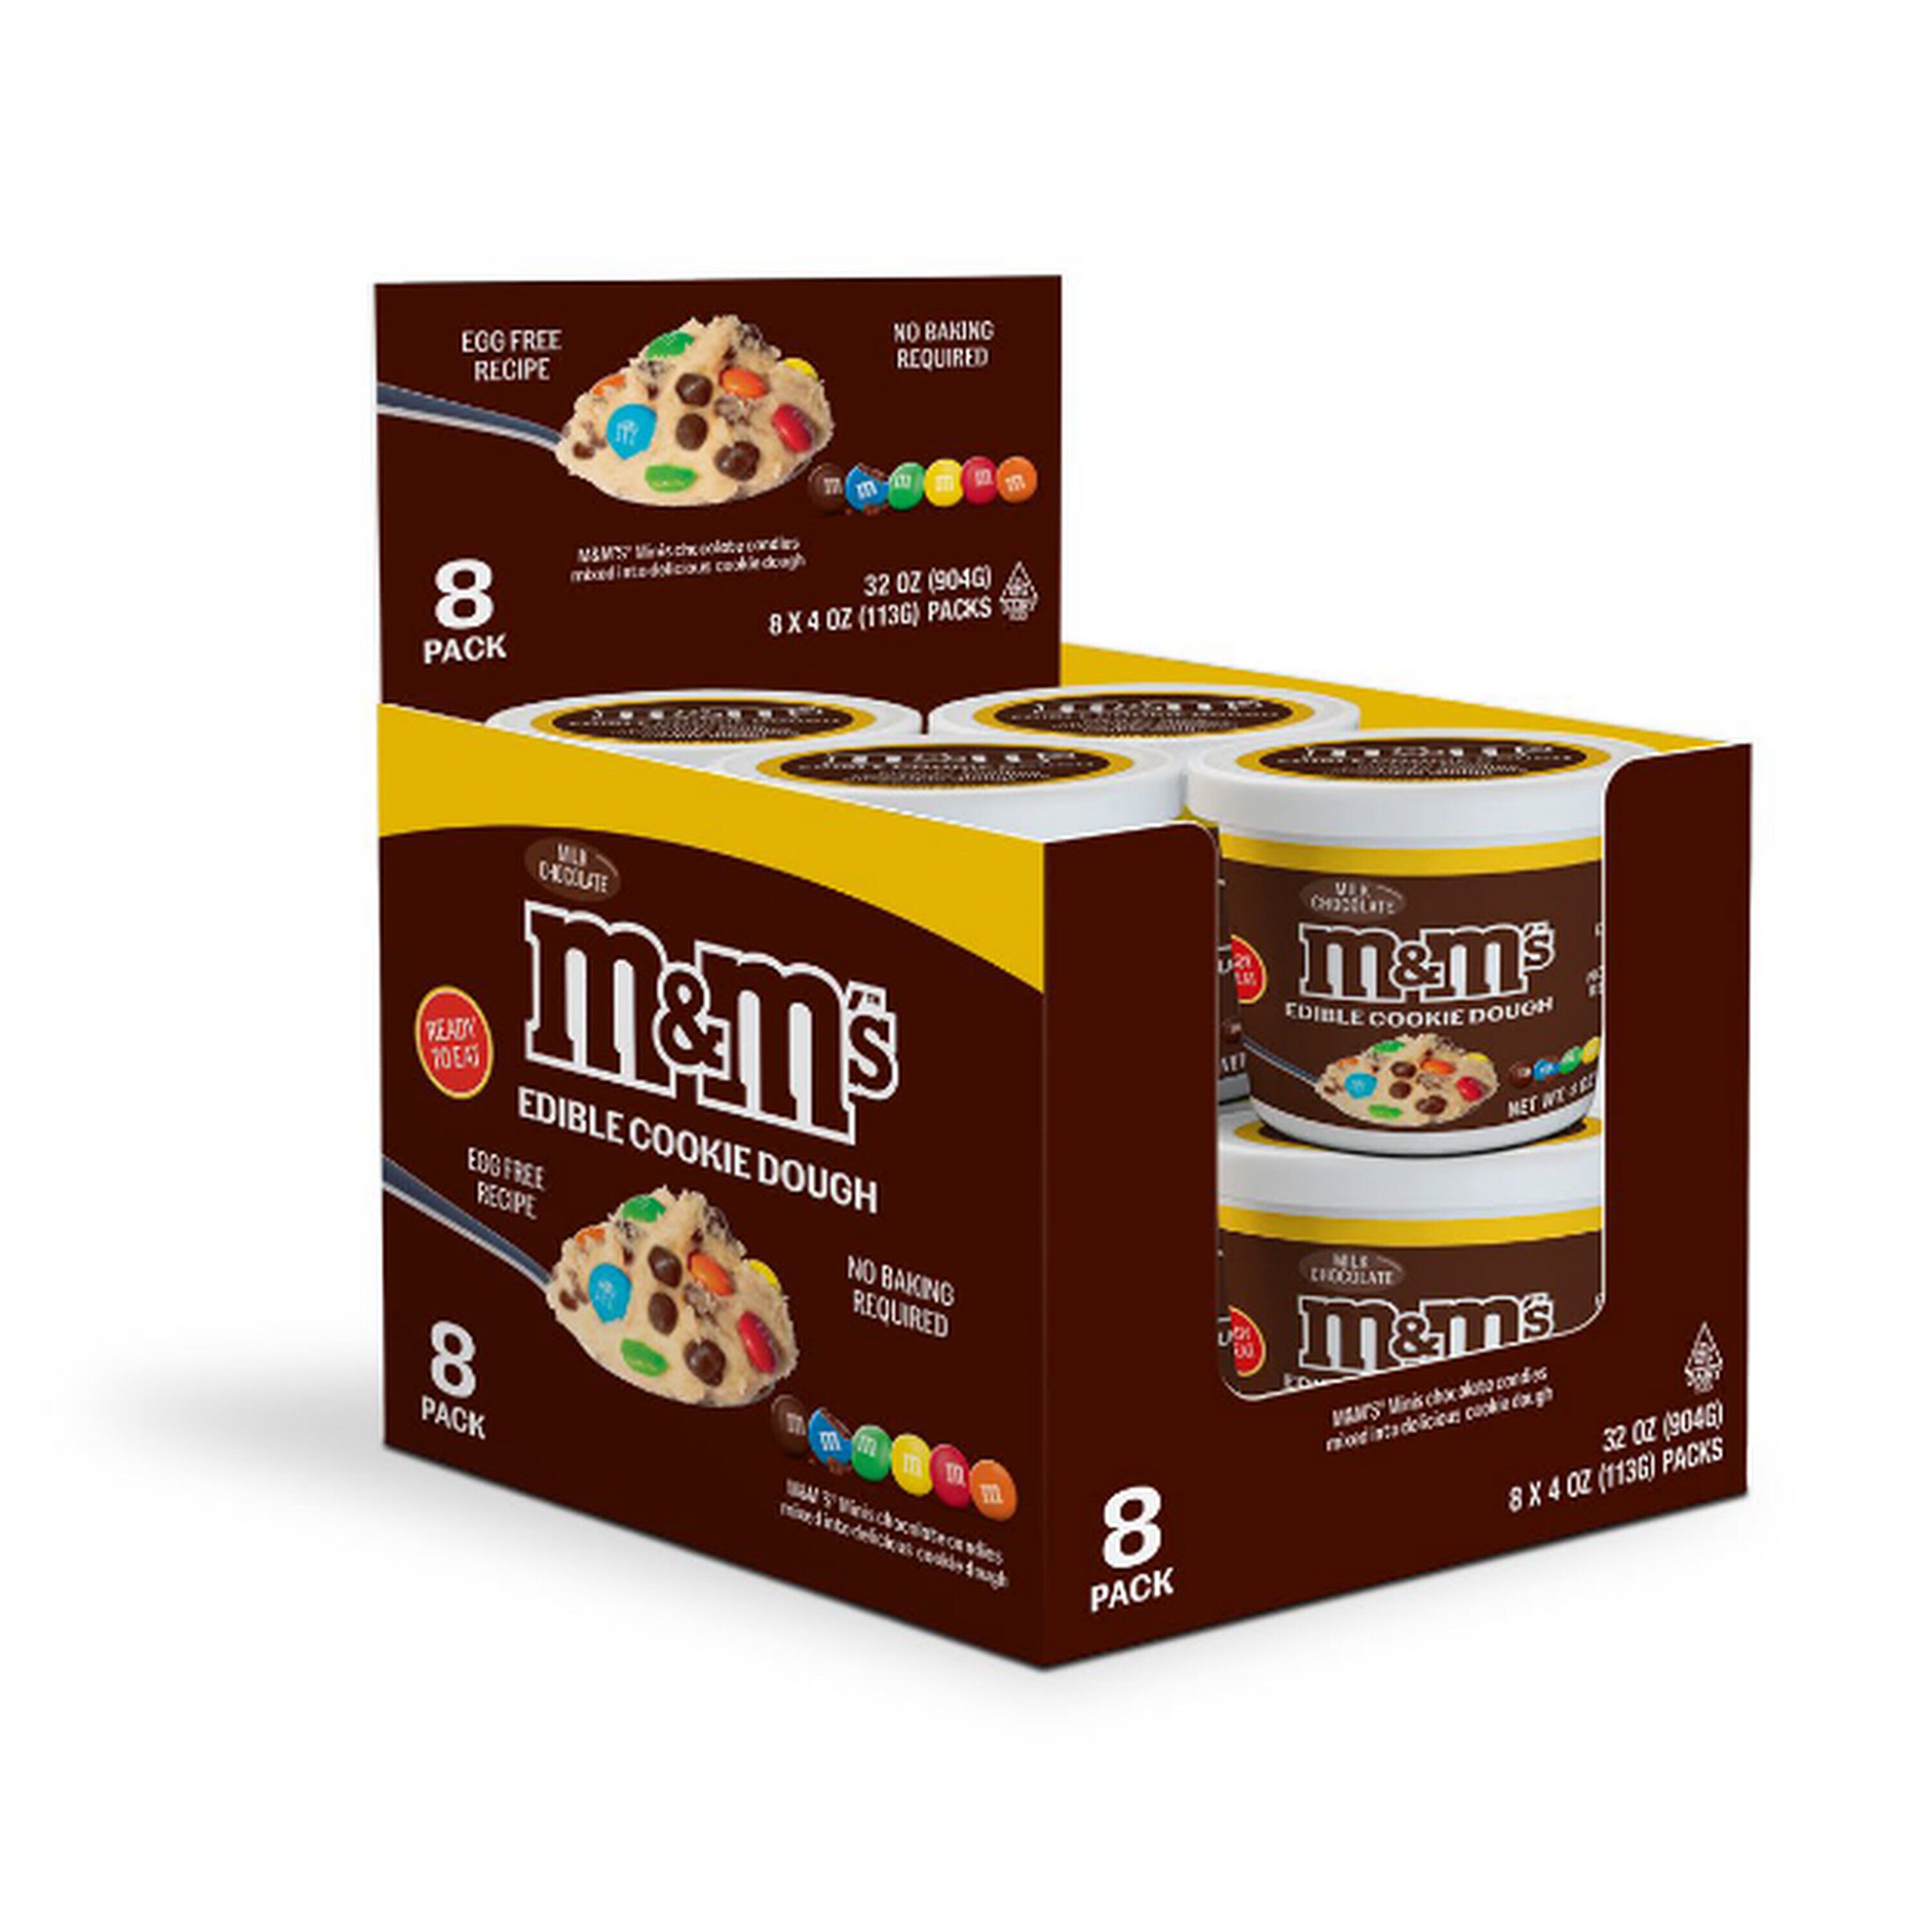 M&M's Cookie Dough - 8.5oz